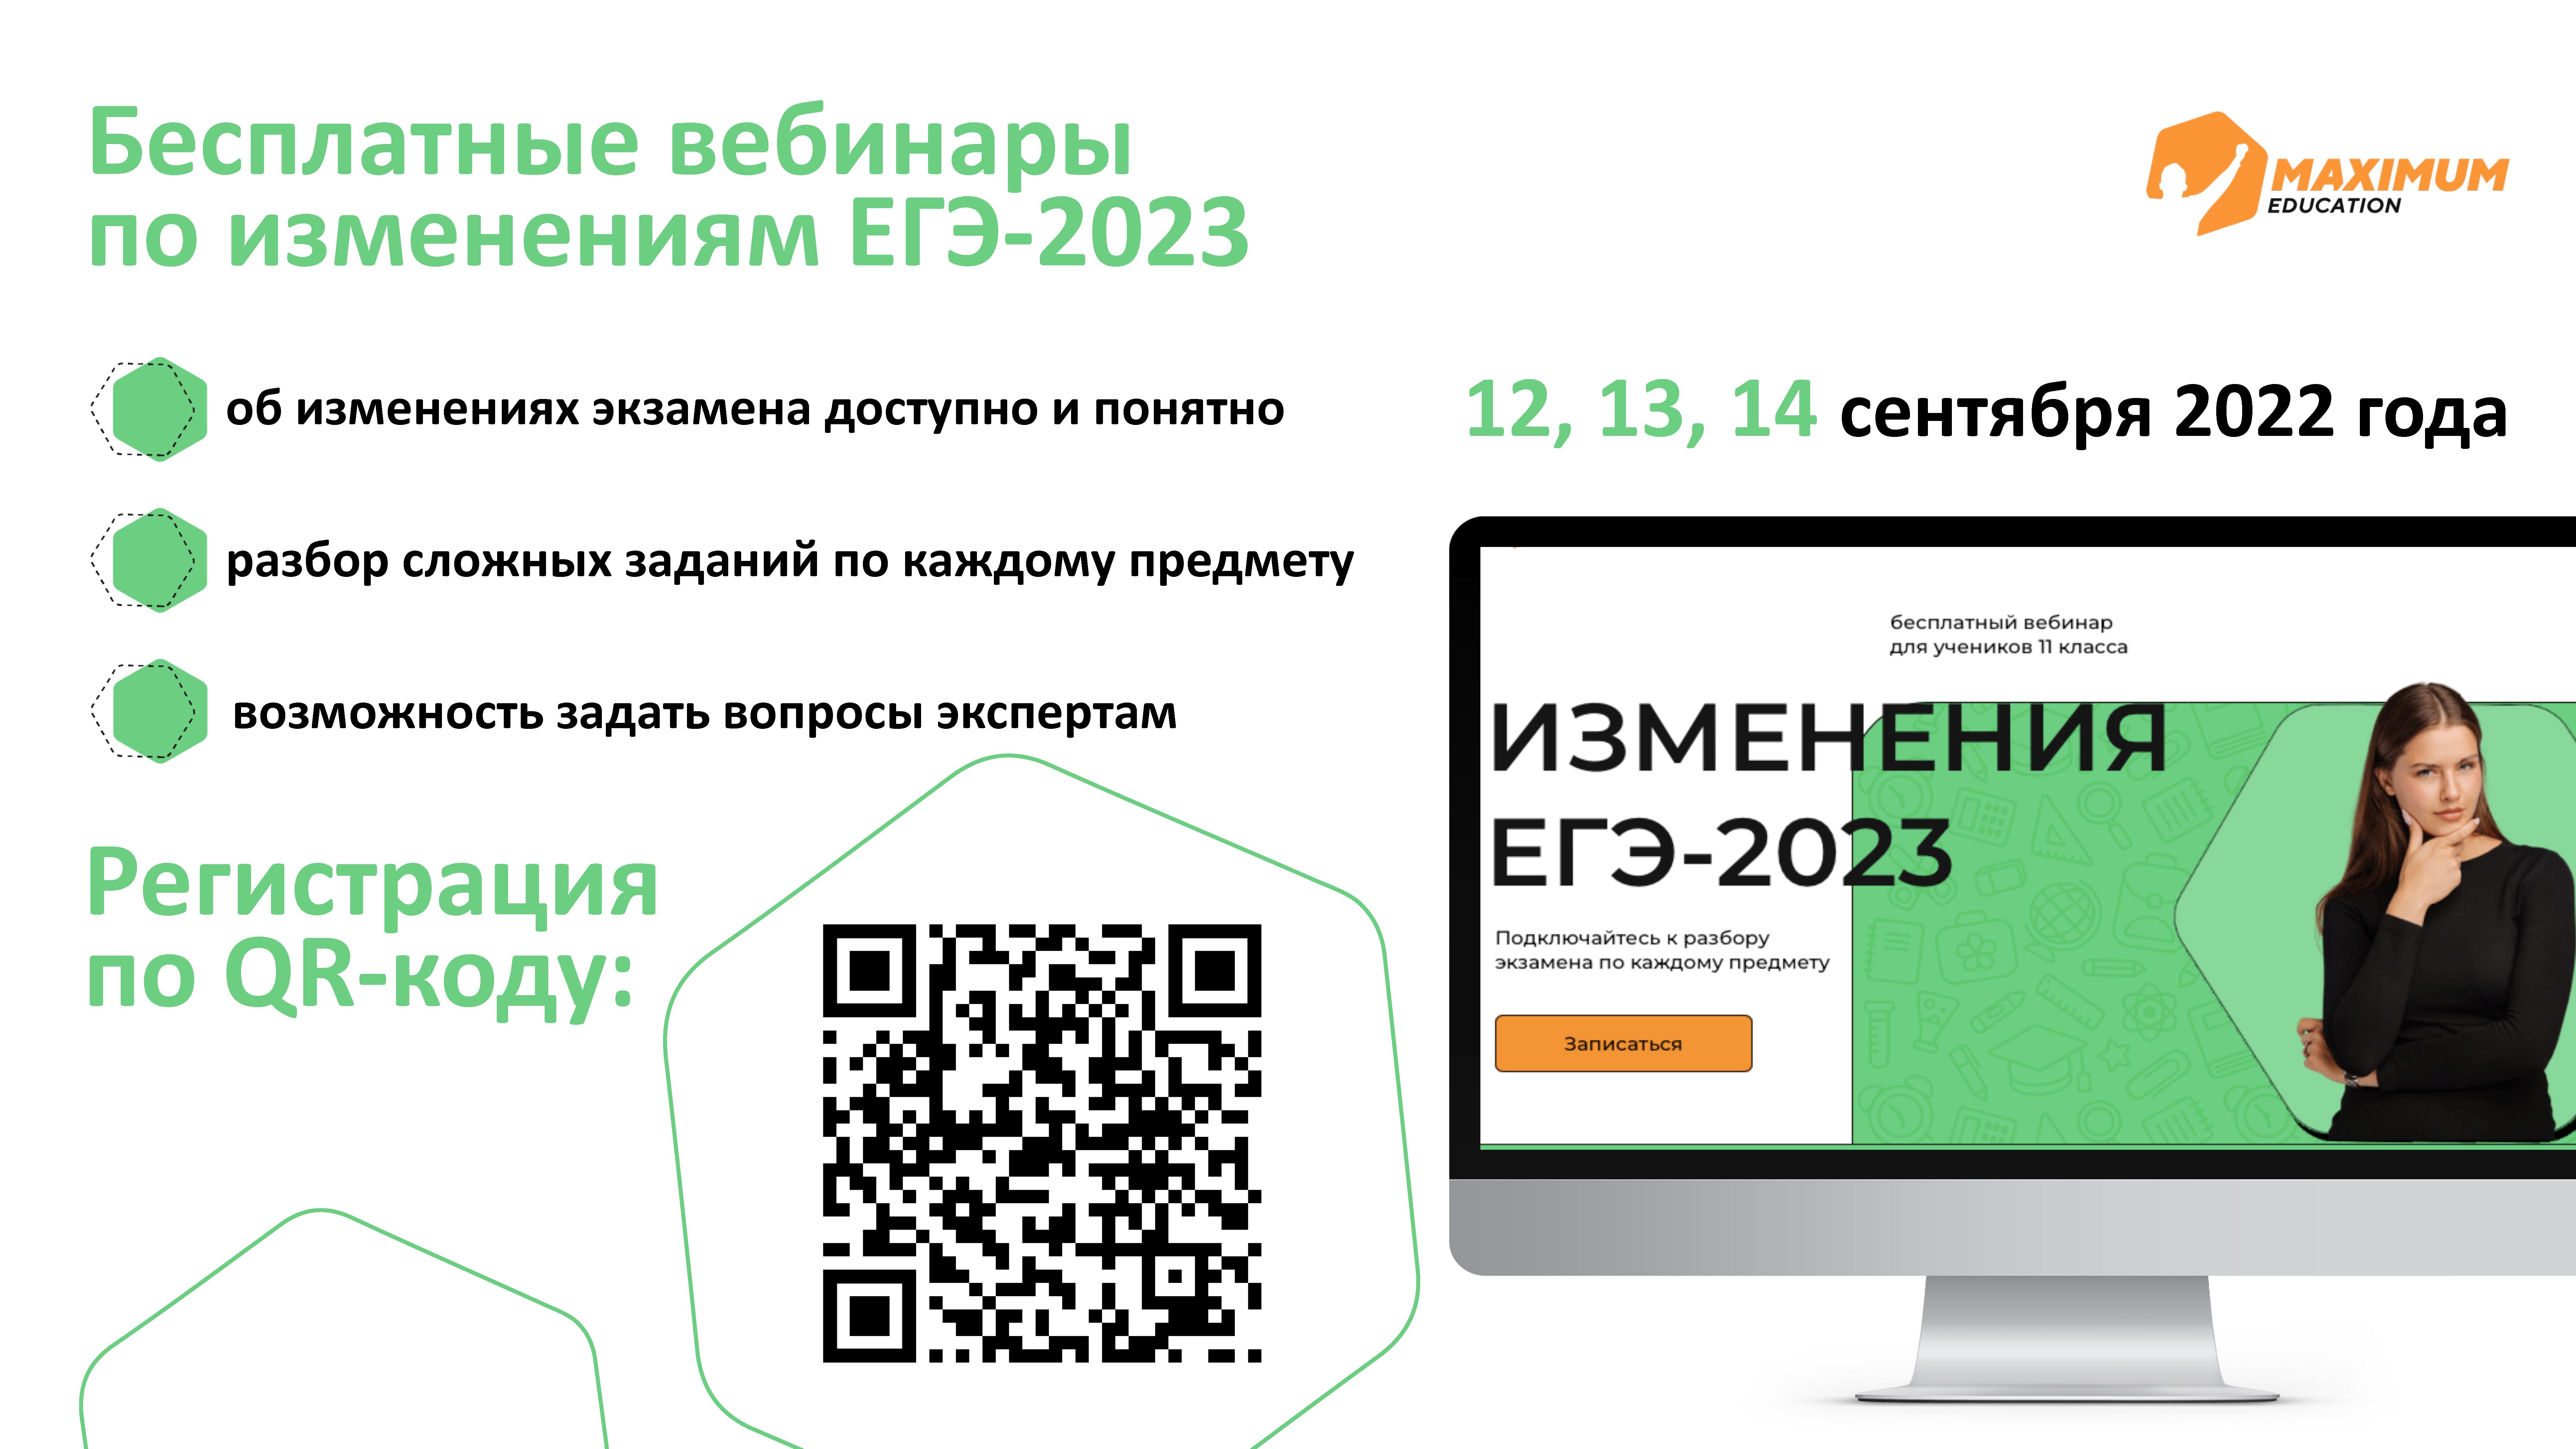 Бесплатные вебинары по изменениям в ЕГЭ-2023.